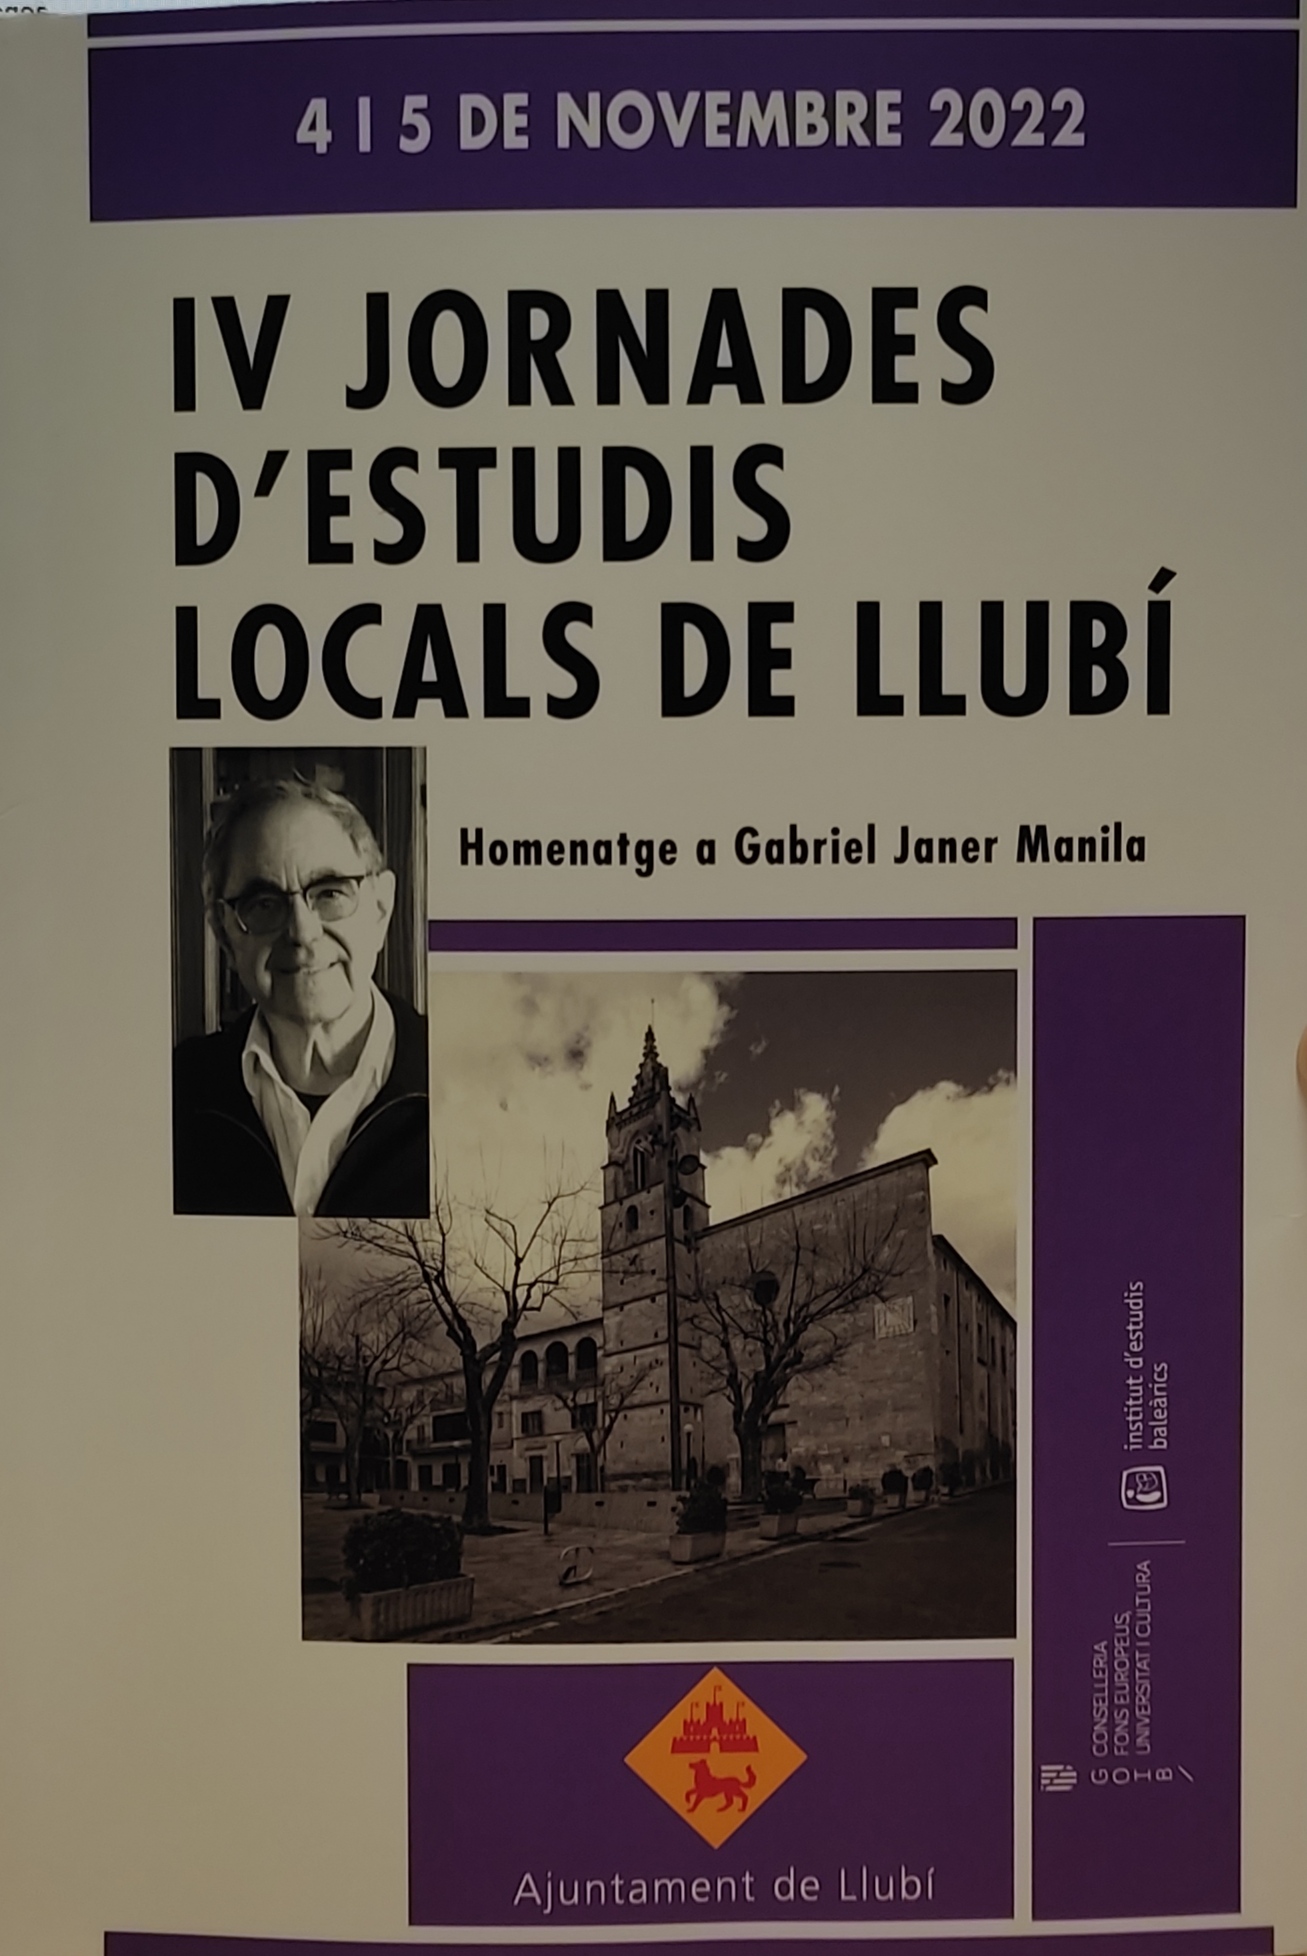 Imagen de portada del libro IV Jornades d'Estudis Locals de Llubí